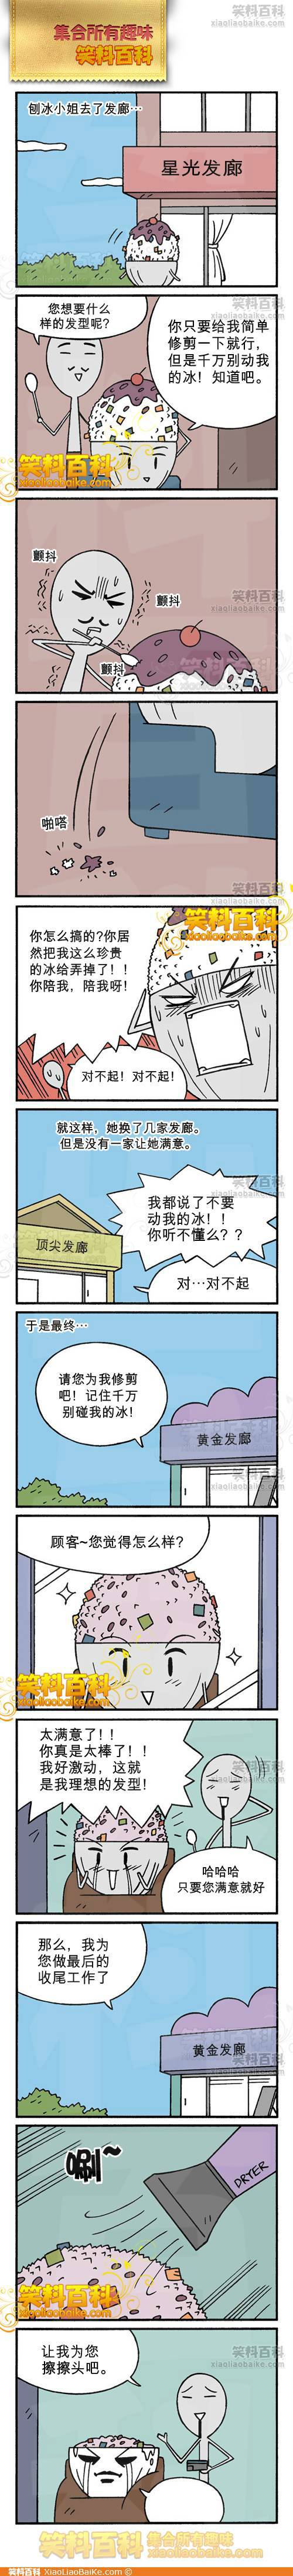 邪恶漫画爆笑囧图第234刊：法术也有副作用